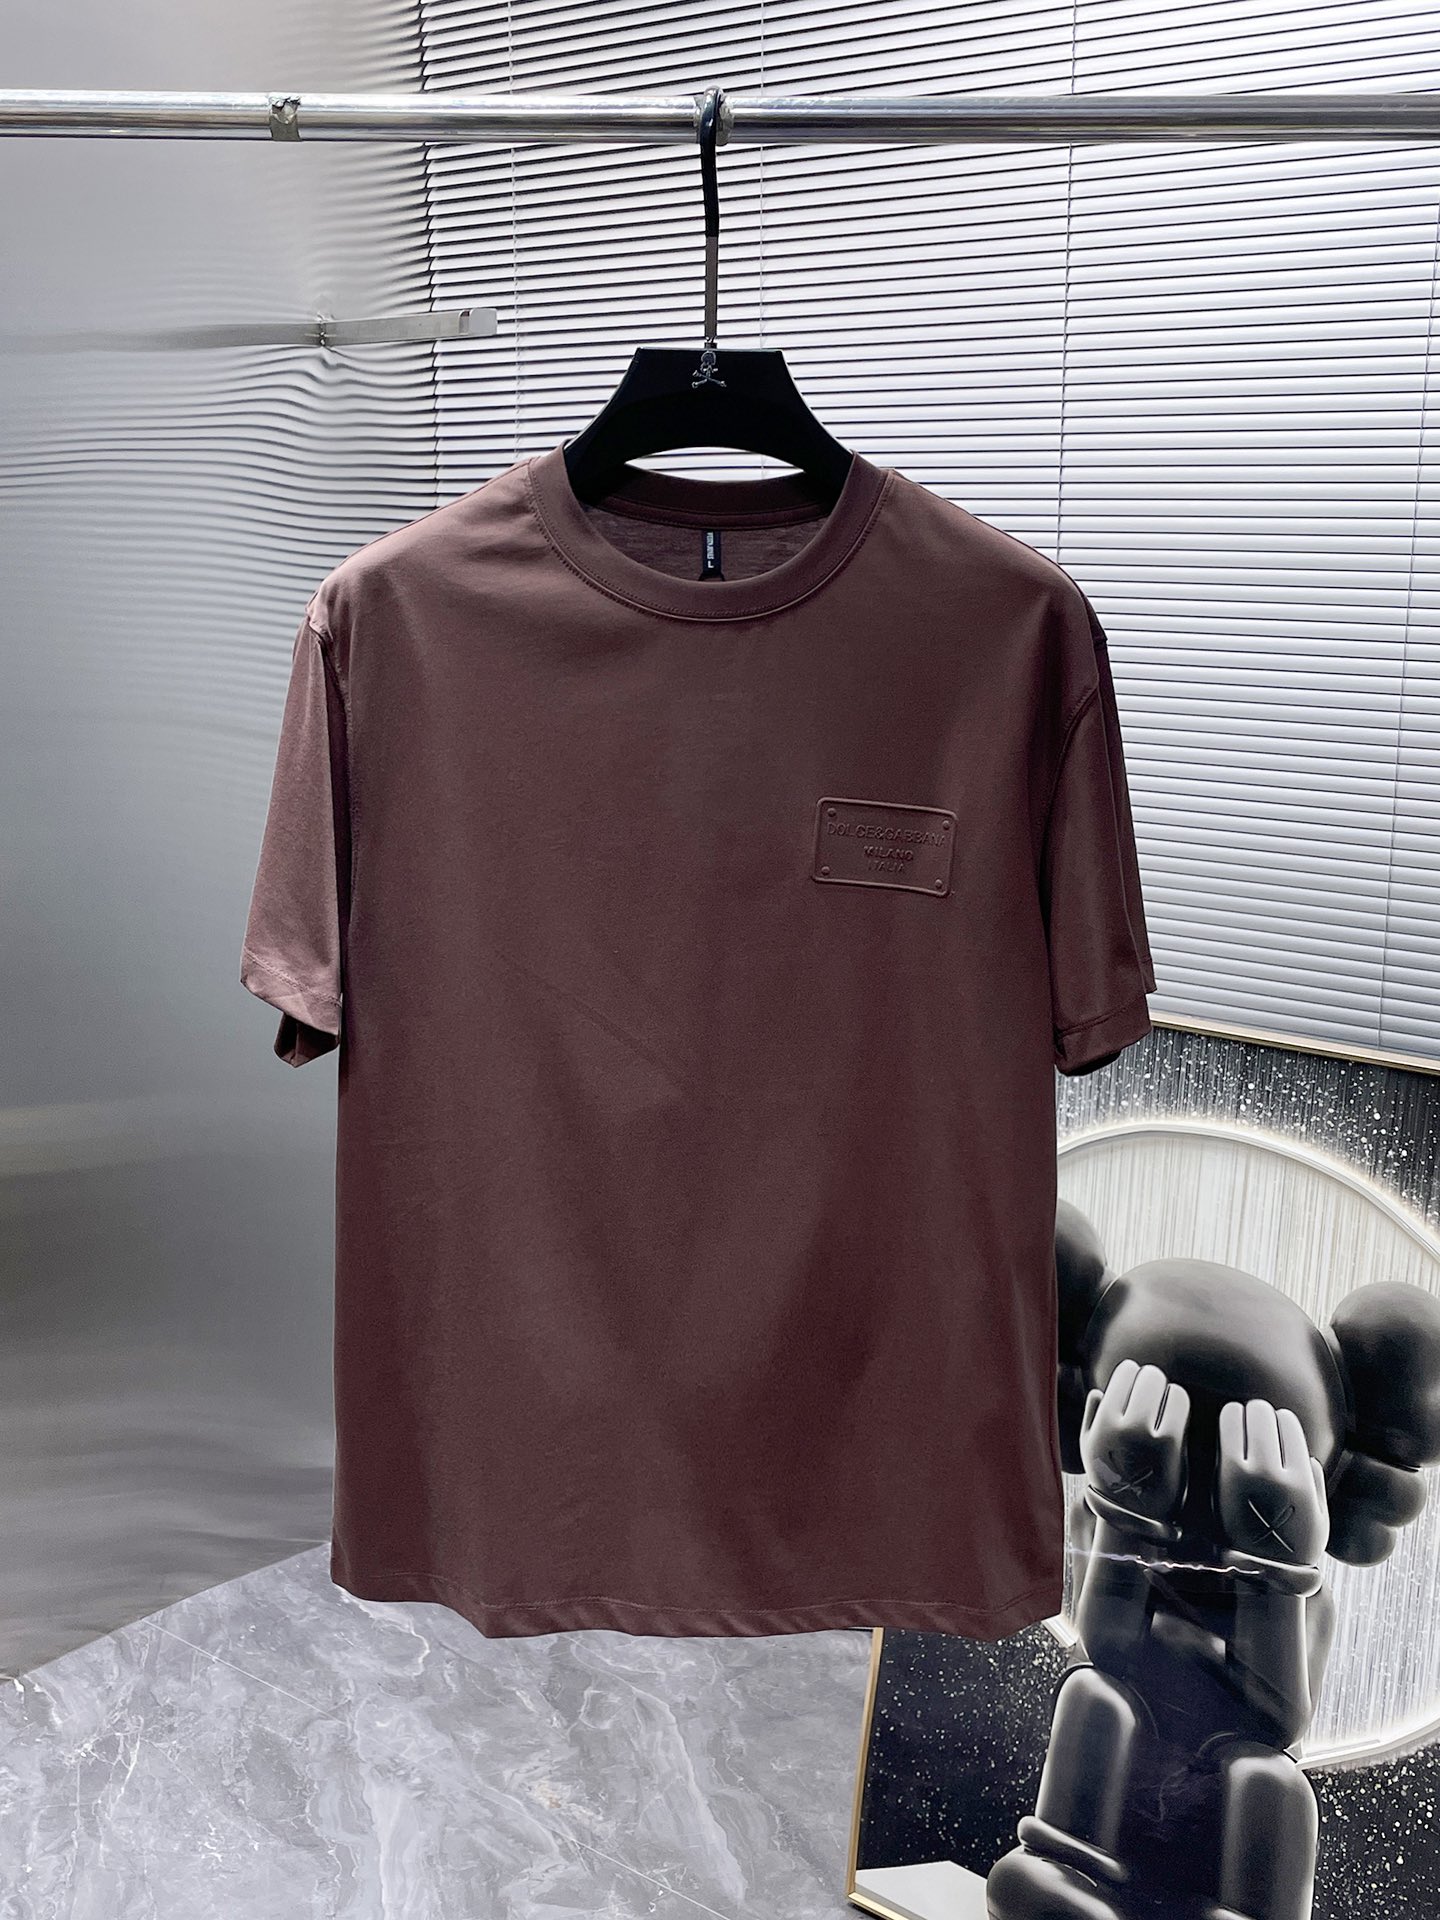 Dolce & Gabbana Good
 Clothing T-Shirt First Top
 Short Sleeve